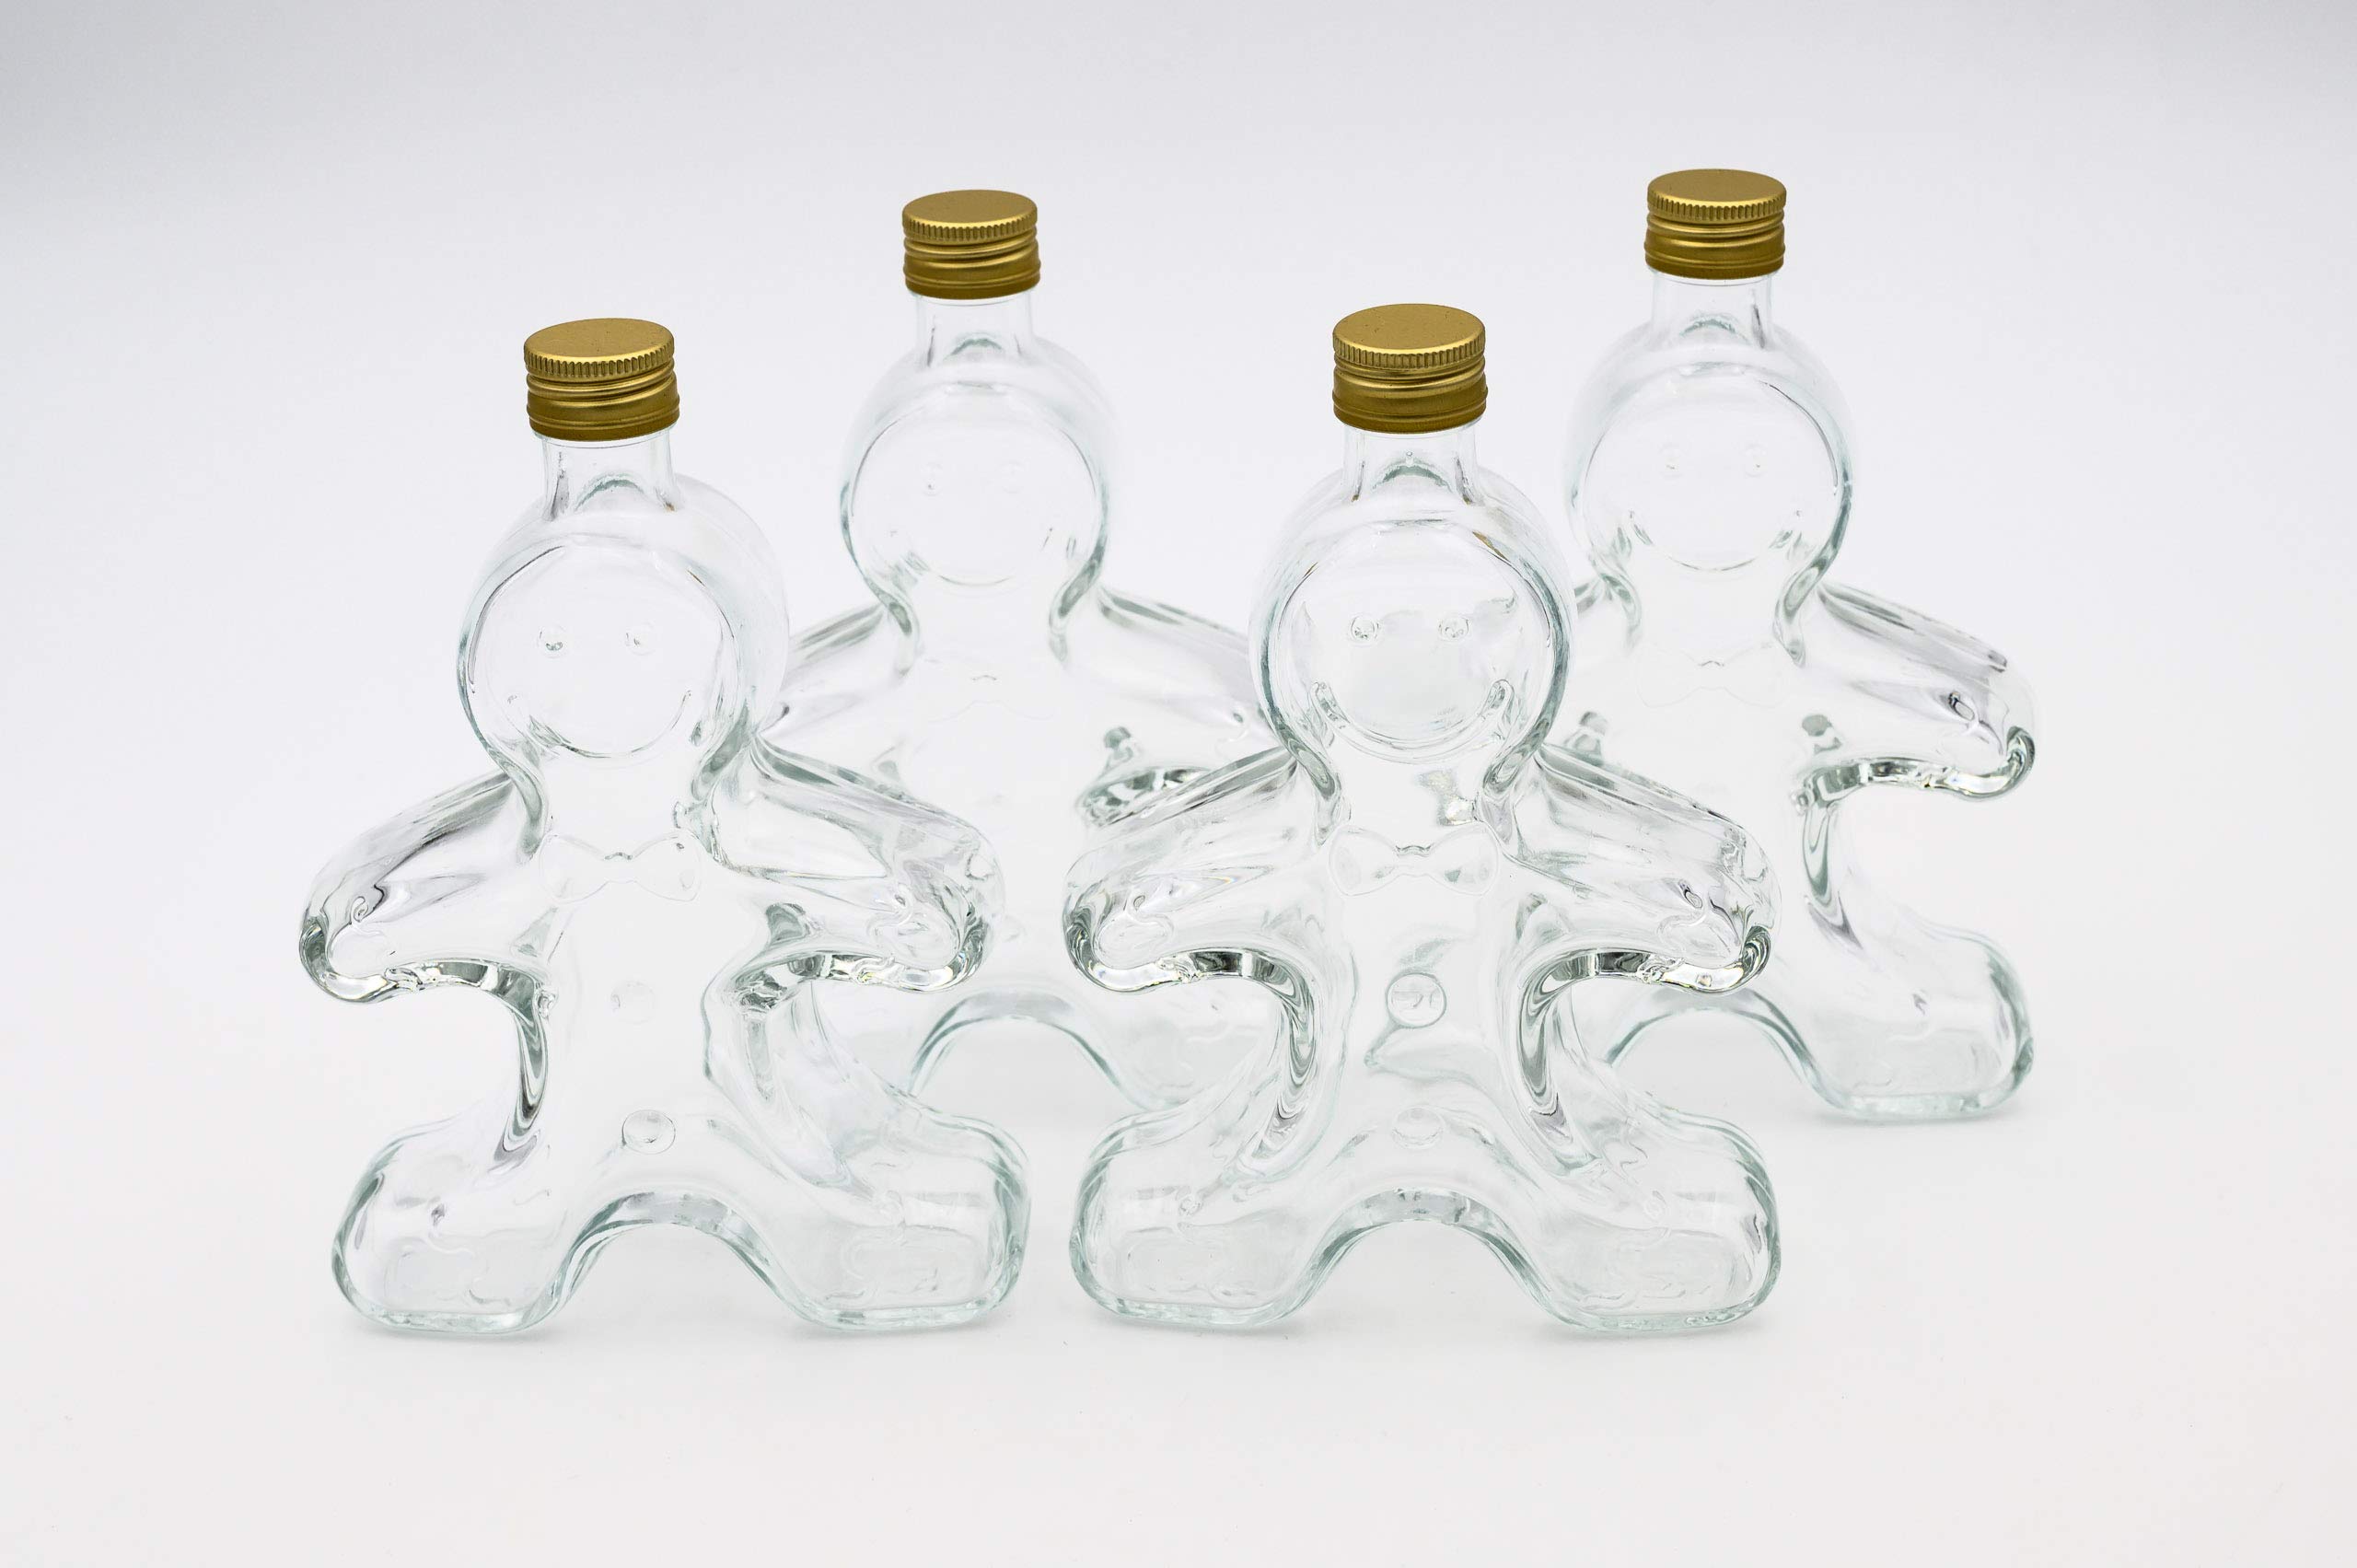 Flaschenbauer - 4 x leere Glasflaschen 250ml Lebkuchenmann: Mini Glasflaschen mit Schraubverschluss Gold verwendbar als kleine Flaschen zum Befüllen, leere Schnapsflaschen klein, Likörflaschen